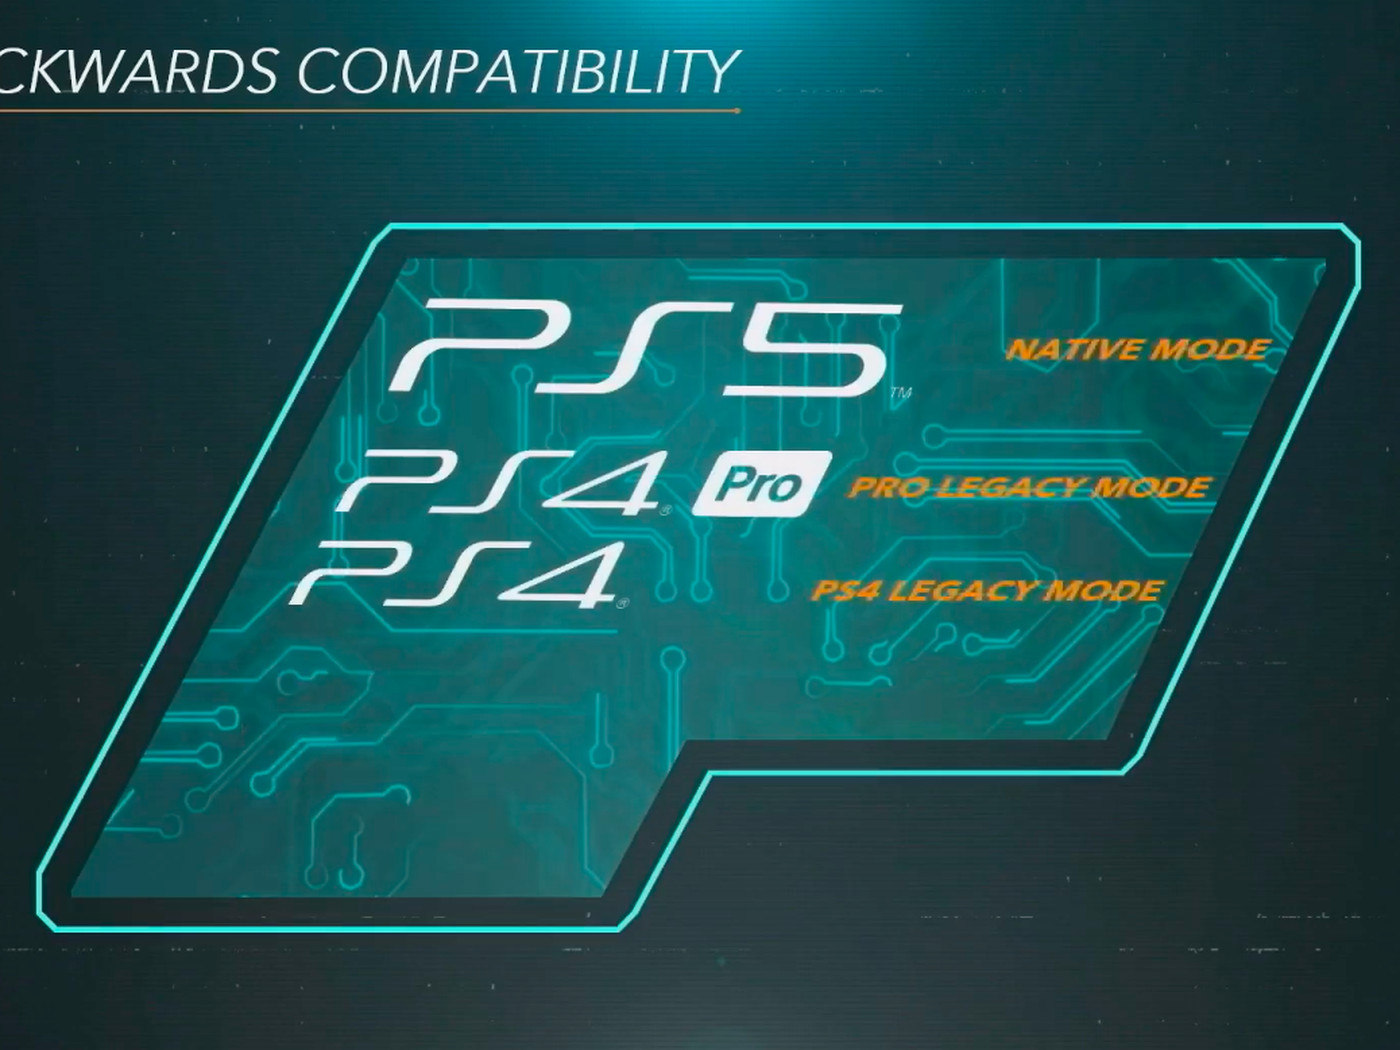 La compatibilitat inversa de Sony significa que només els jocs de PS4 serien compatibles amb la nova PS5